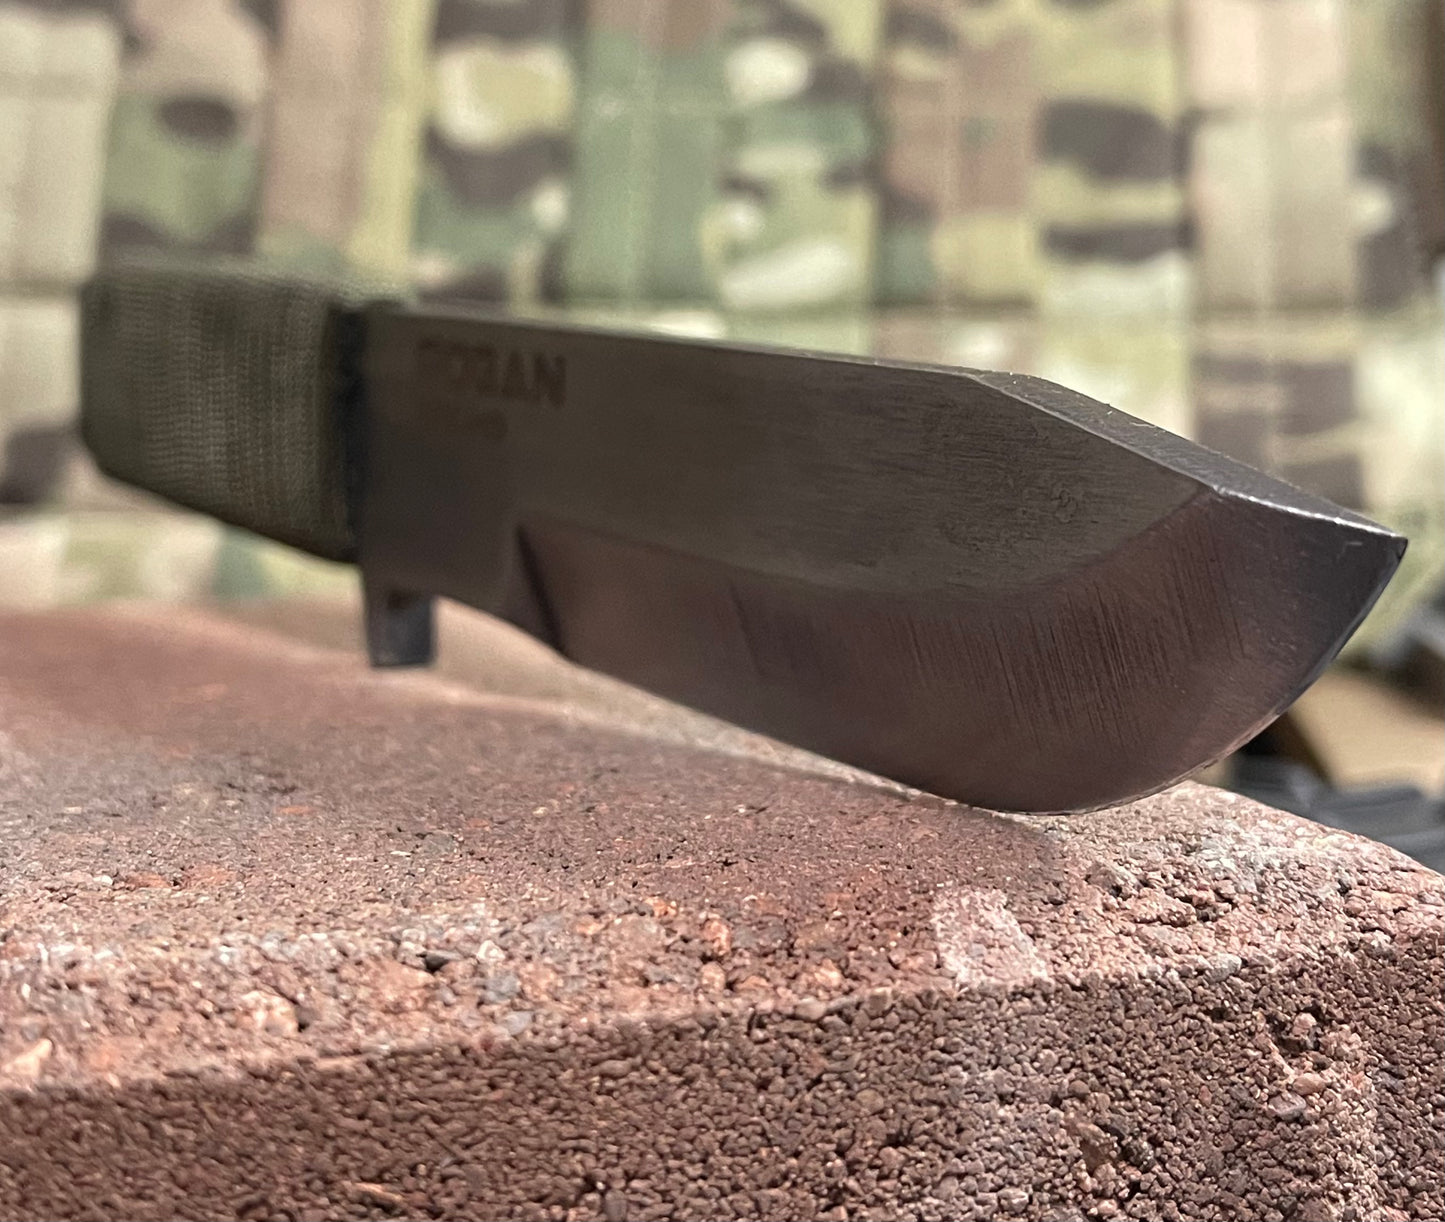 RFK-HD (Rogan Field Knife - Heavy Duty)